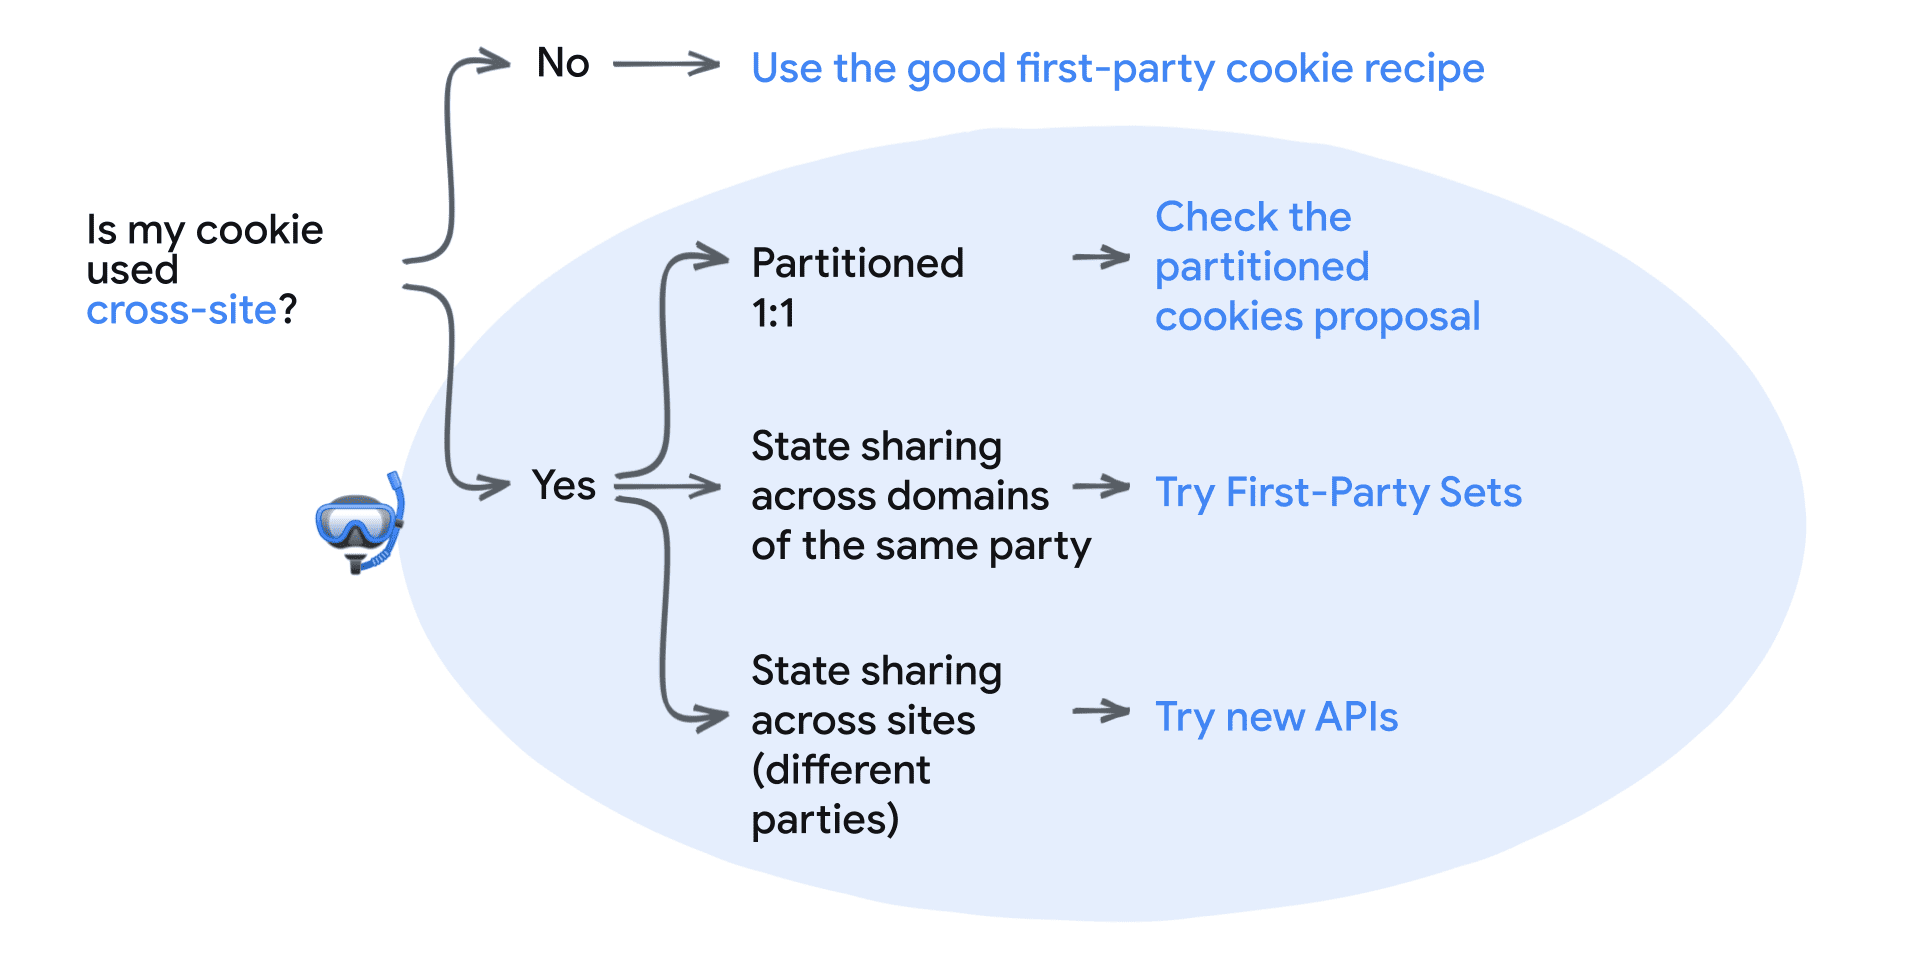 האם קובץ ה-cookie שלי נמצא בשימוש באתרים שונים? לא: השתמשו במתכון הטוב של קובץ cookie מהדומיין הנוכחי.
כן: חלוקה למחיצות 1:1 – בדיקת הצעת ה-CHIPS, שיתוף המצב בין דומיינים של אותו צד – שימוש בדומיינים של צד ראשון, שיתוף מצב בין אתרים (צדדים שונים) – כדאי לנסות את ממשקי ה-API החדשים